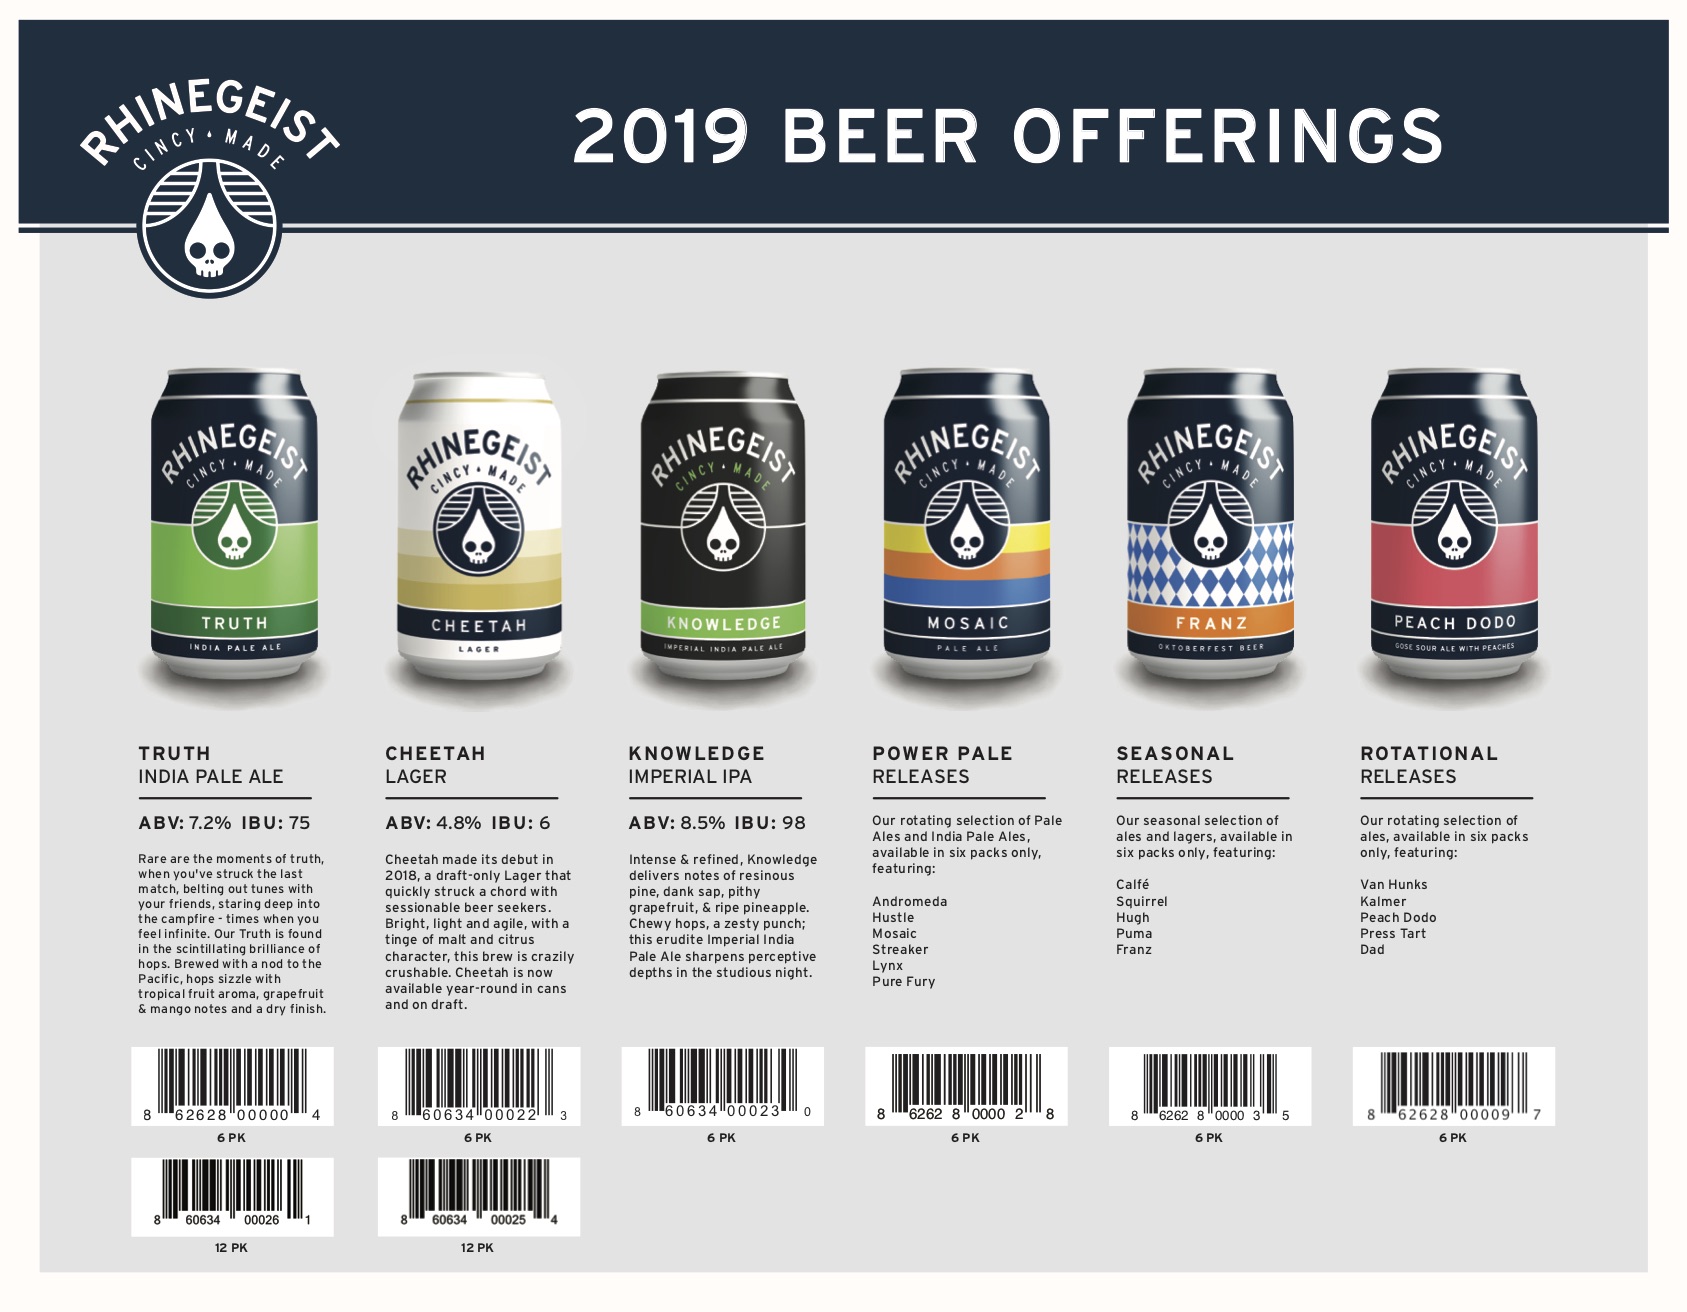 2019 Beer Release Calendars - Rhinegeist